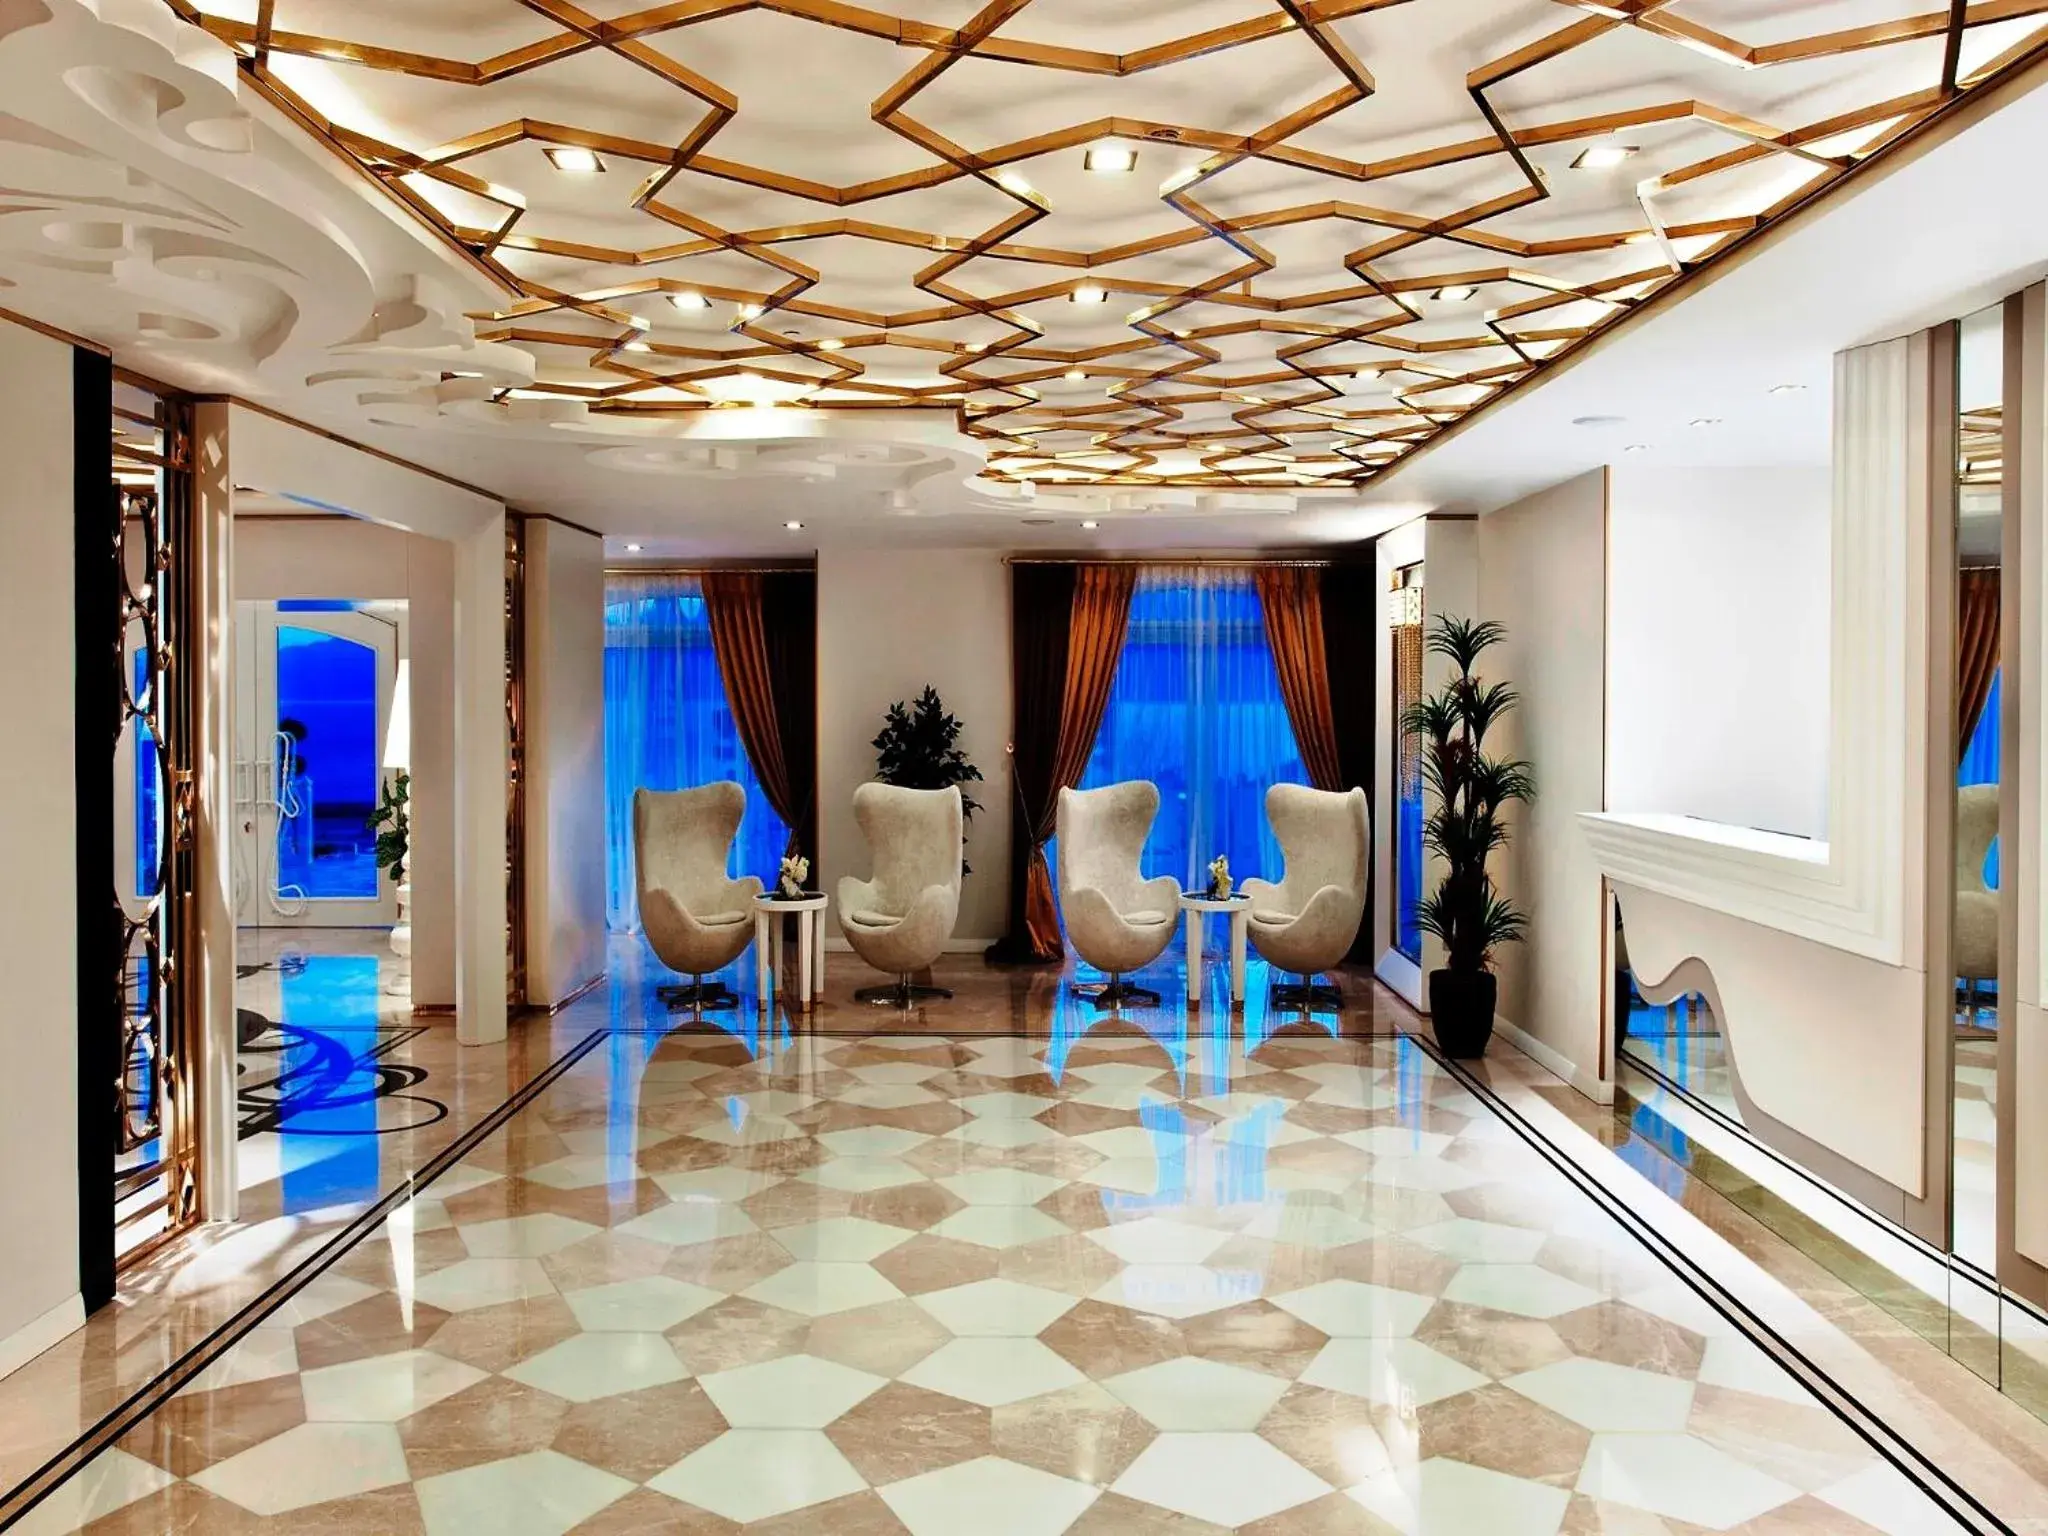 Lobby or reception in La Boutique Hotel & Suites